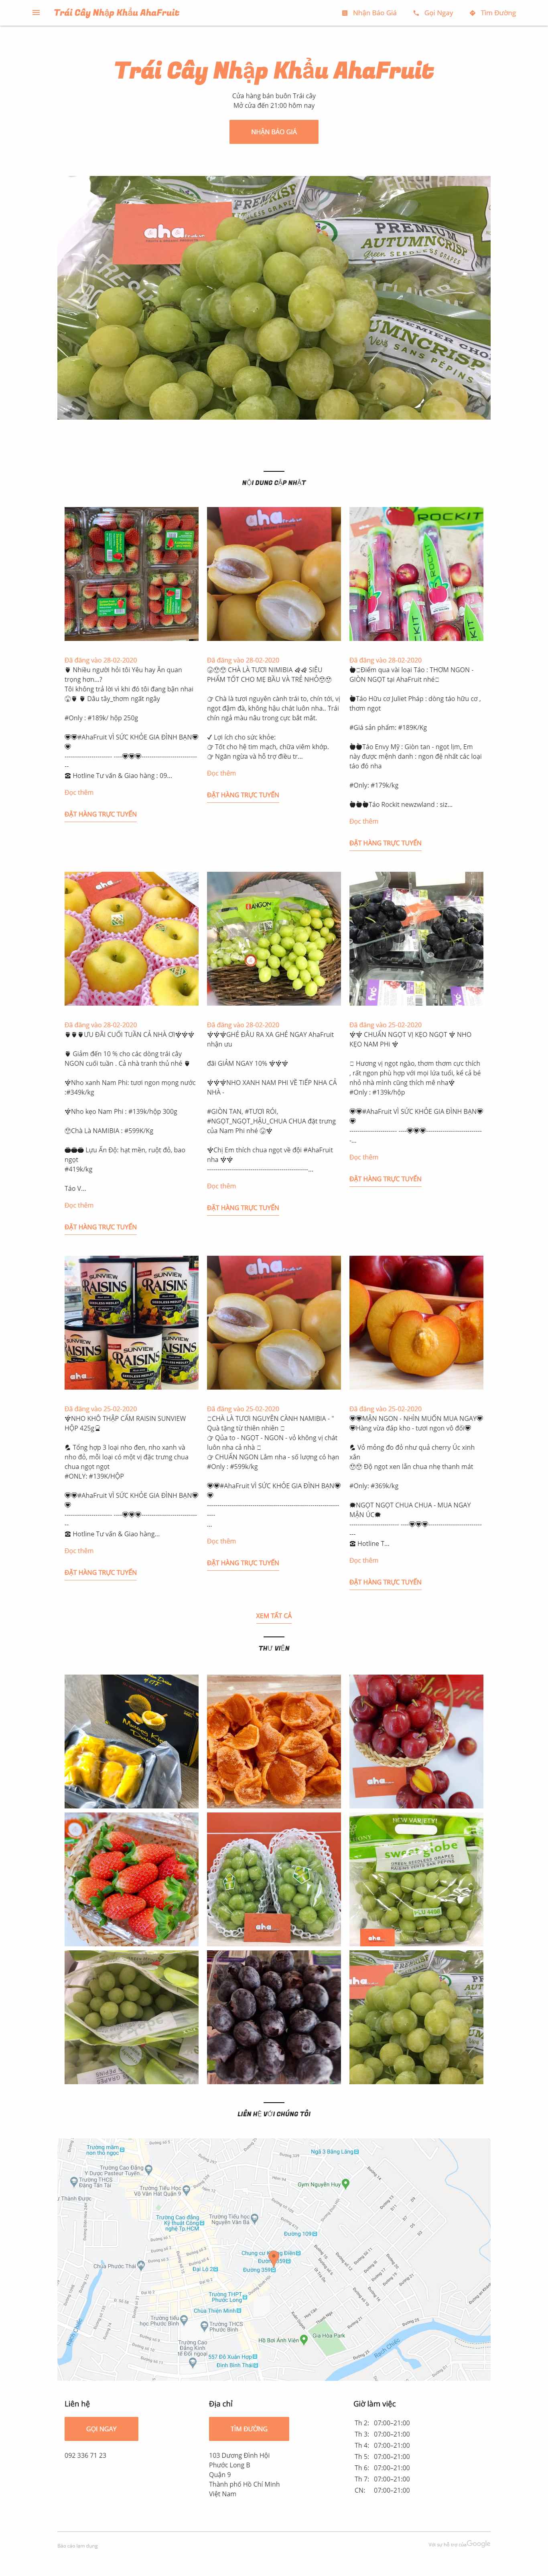 Thiết kế Website bán trái cây - ahafruit-traicay.business.site